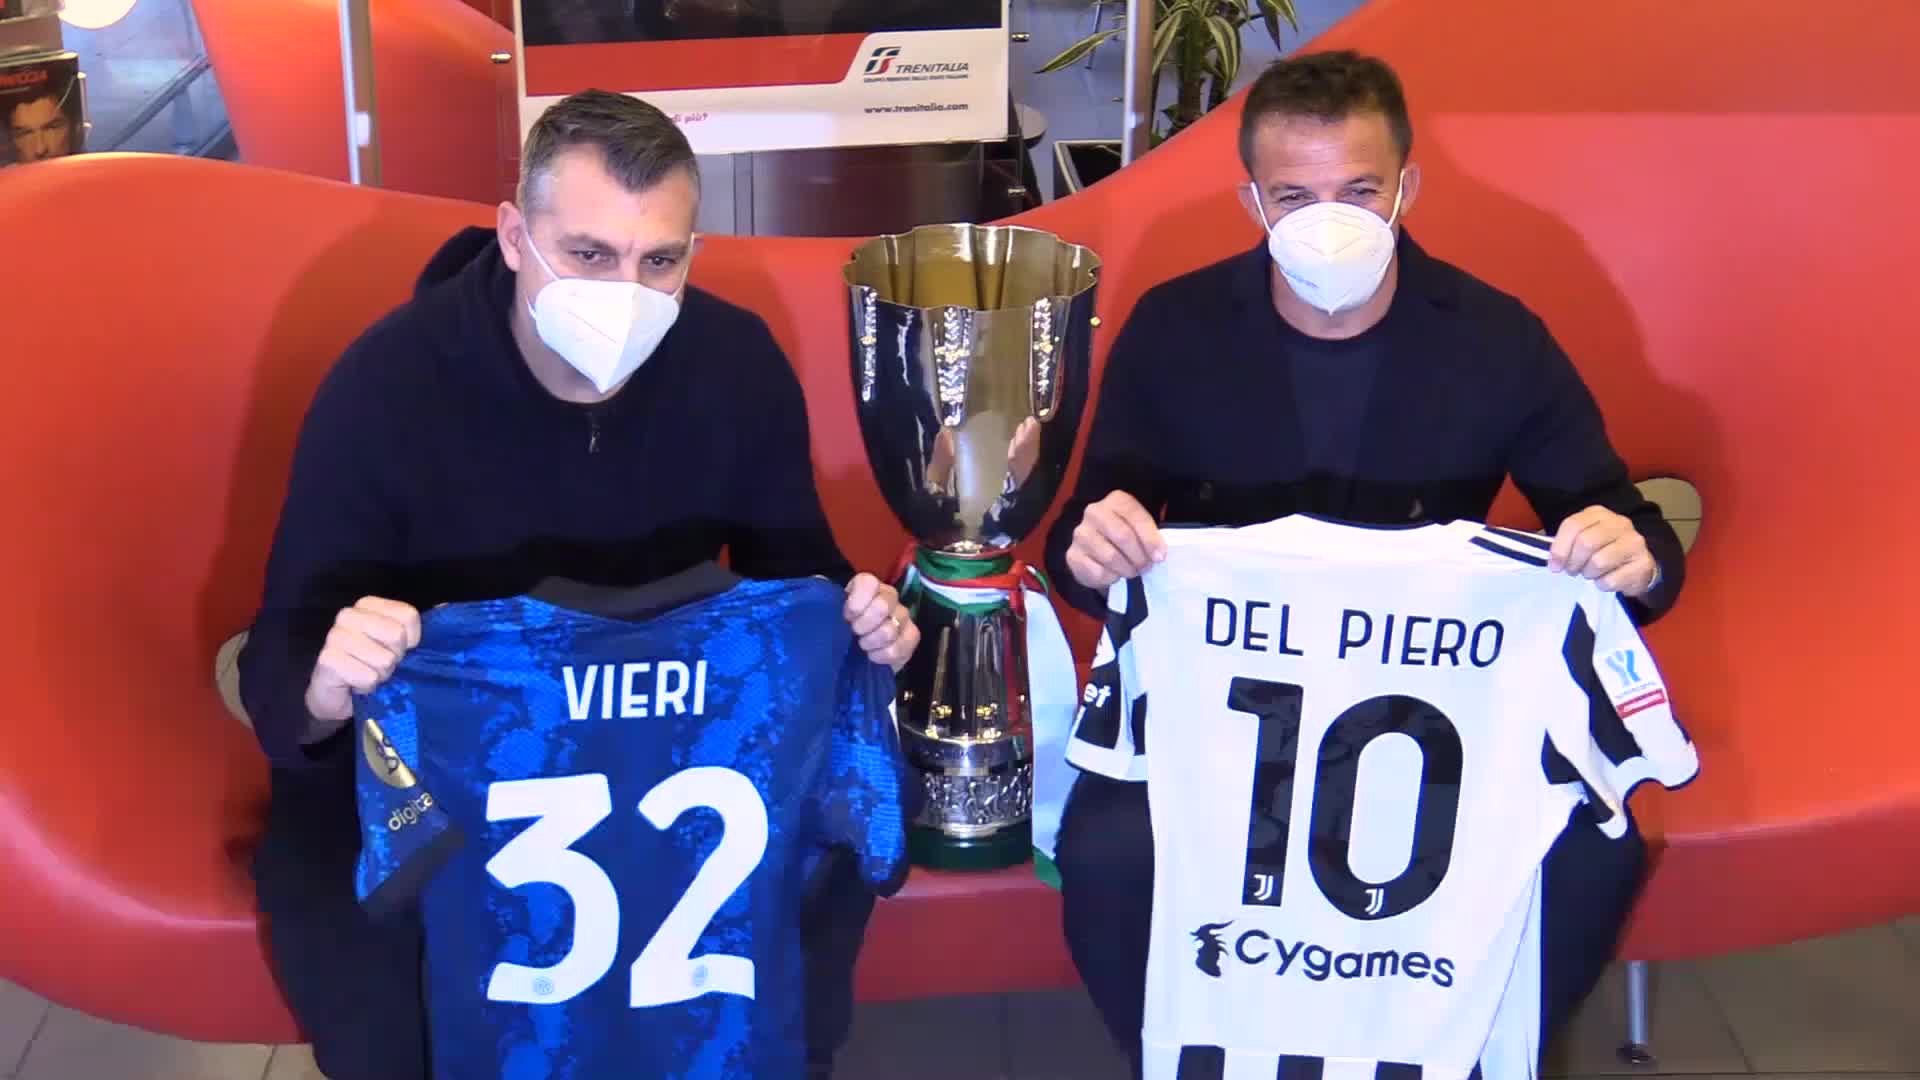 Vieri e Del Piero inaugurano il Frecciarossa Supercoppa - VIDEO